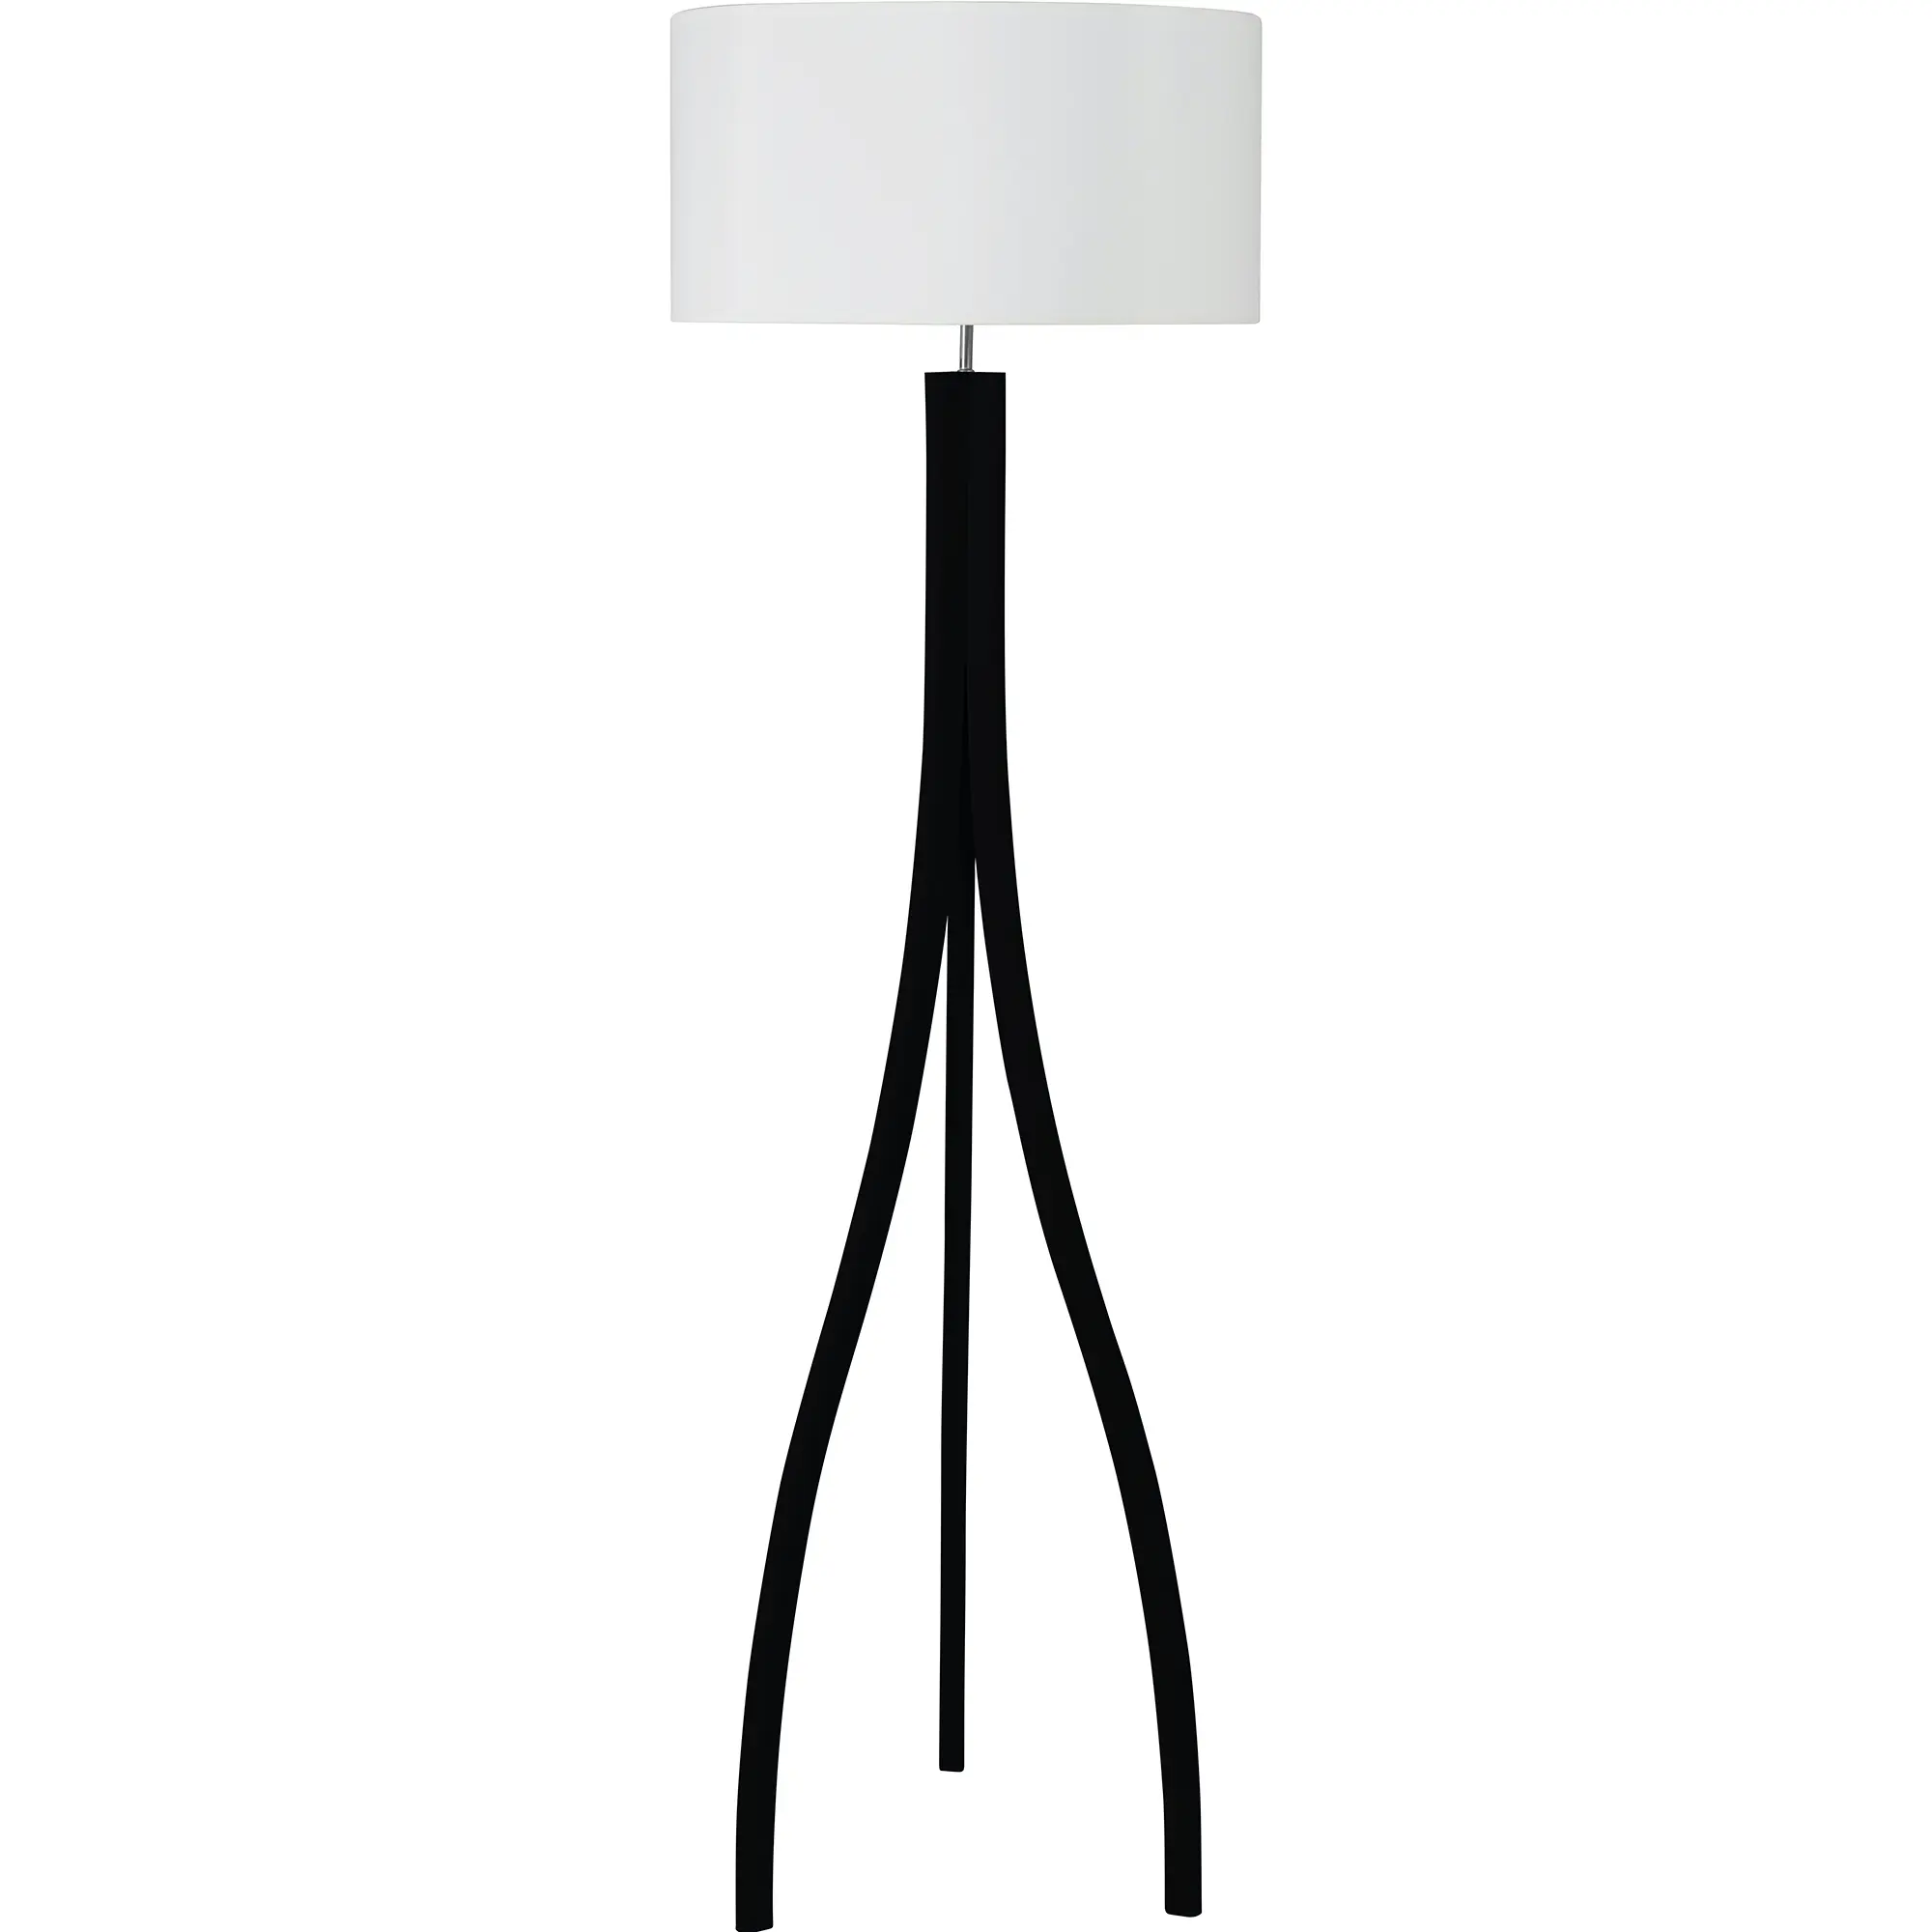 Holz-Stehlampe Skandinavia aus Esche in schwarz, weiß